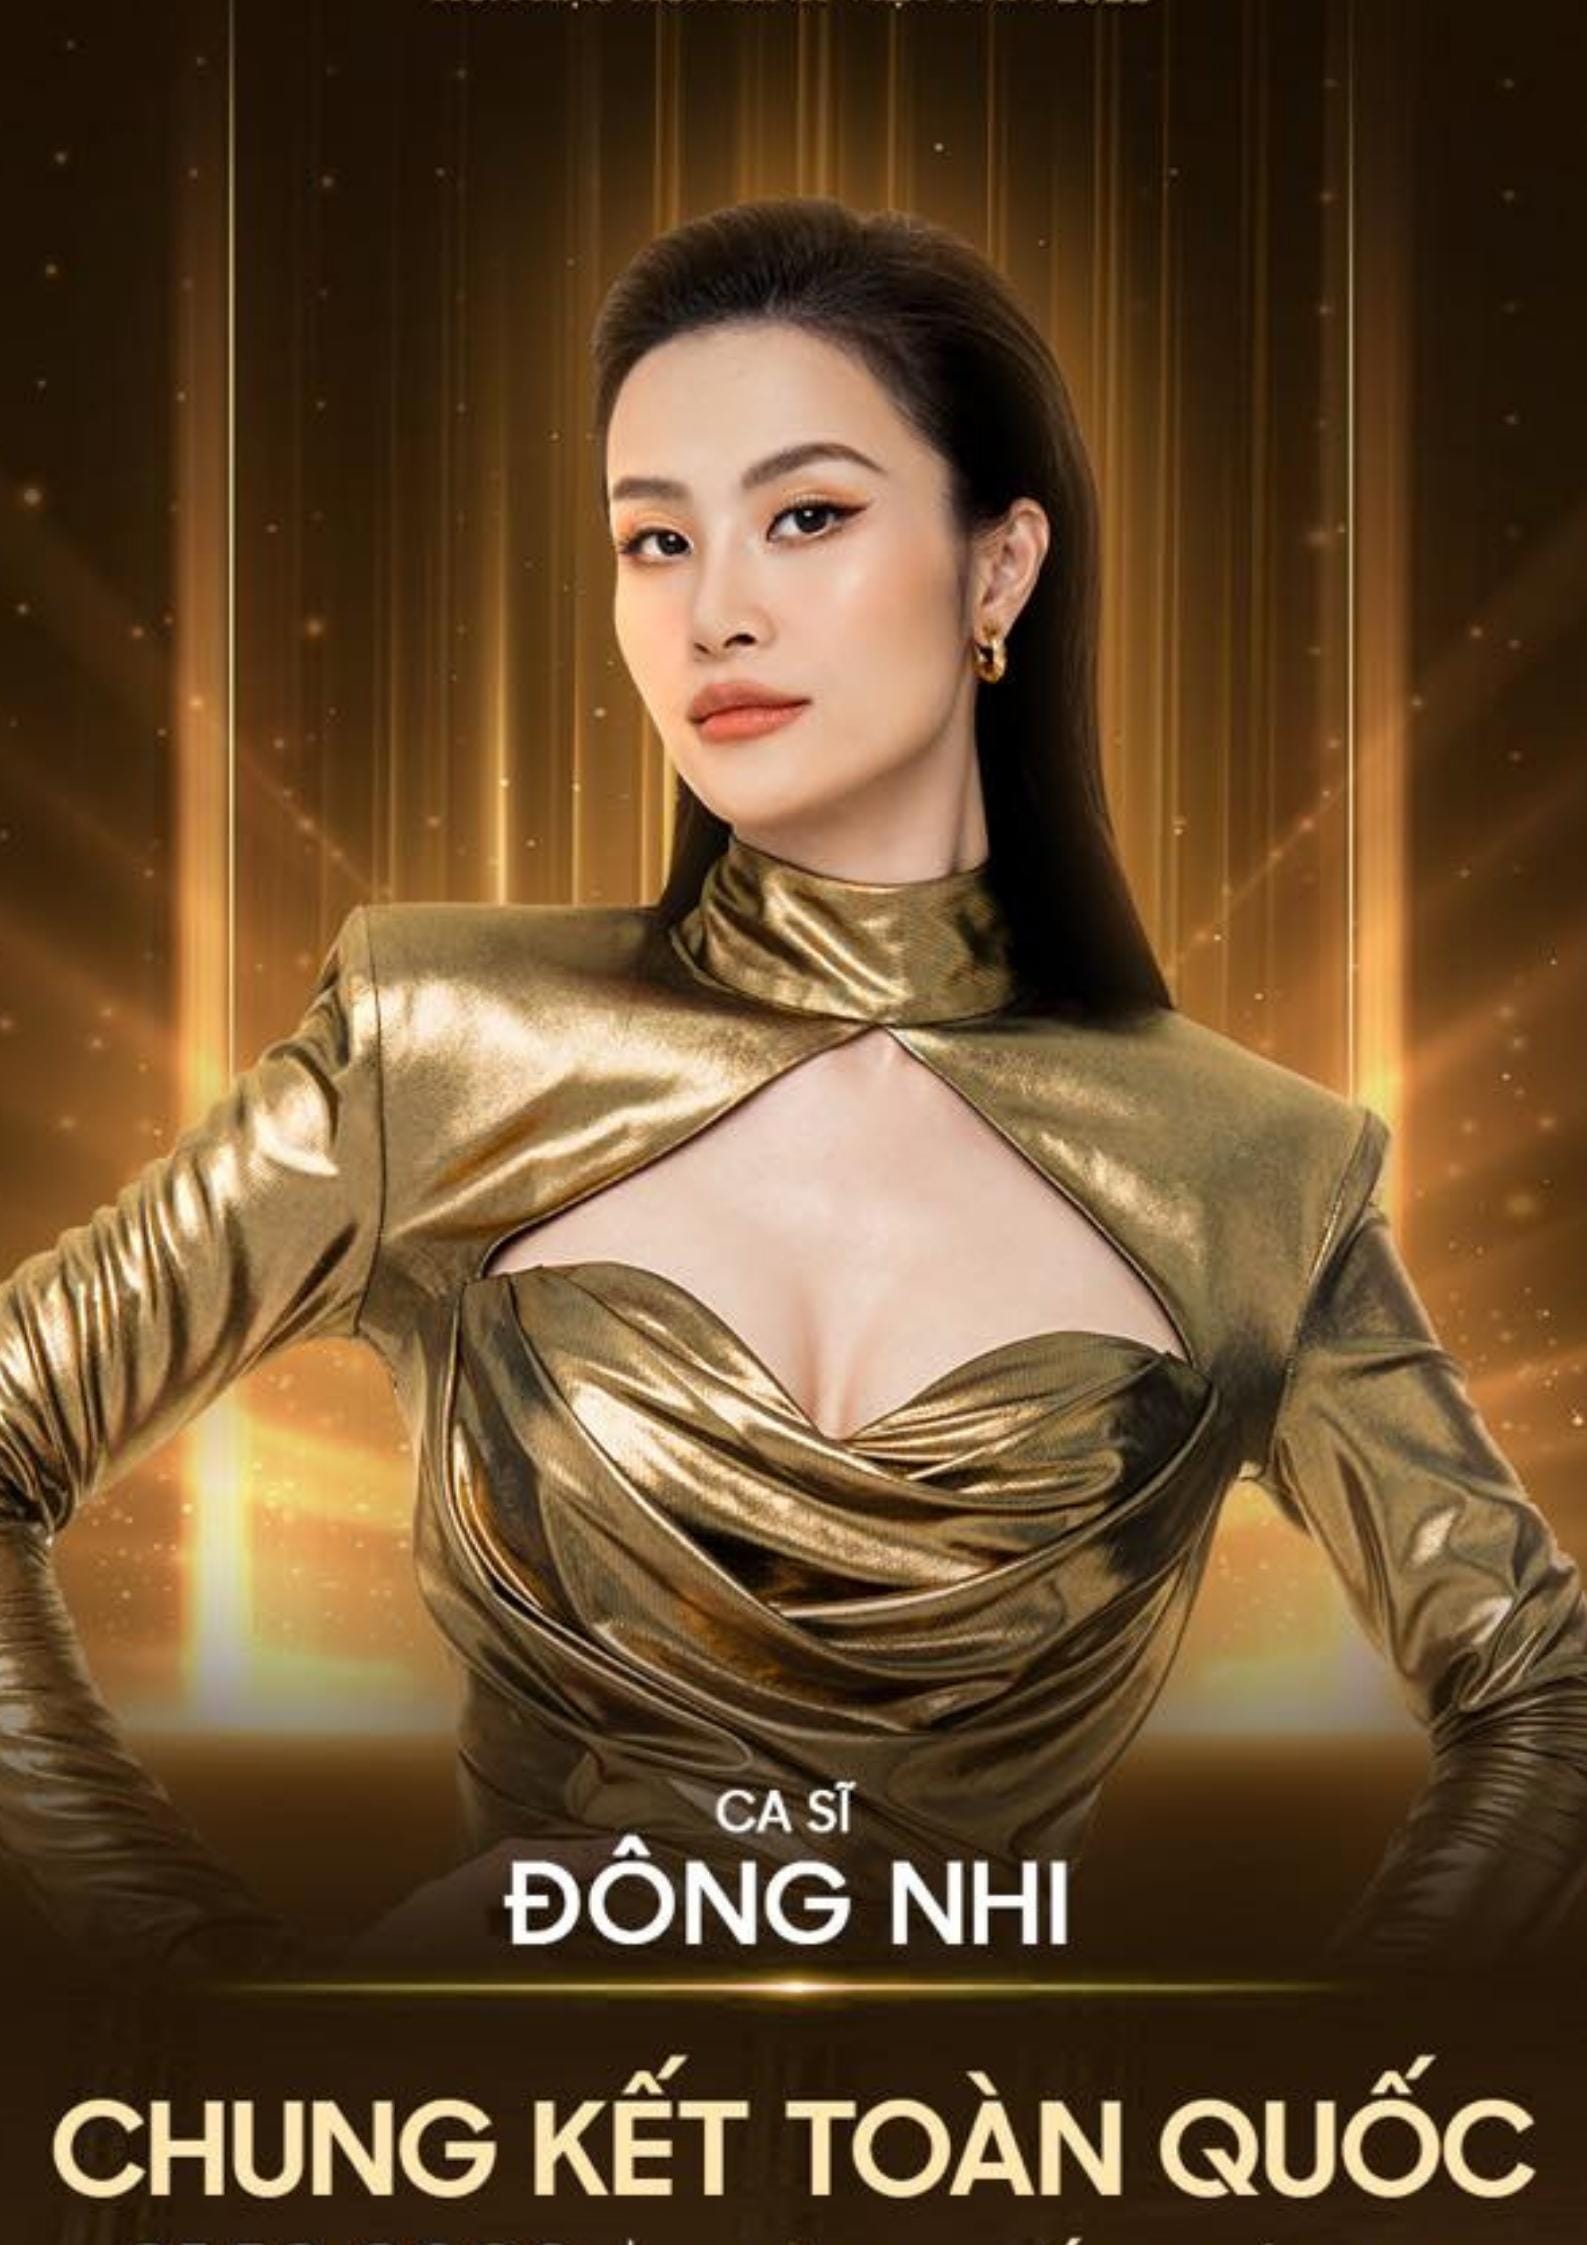 Hé lộ dàn khách mời đổ bộ đêm Chung kết Miss Grand Vietnam, 2 nhân vật quốc tế được mong chờ-1